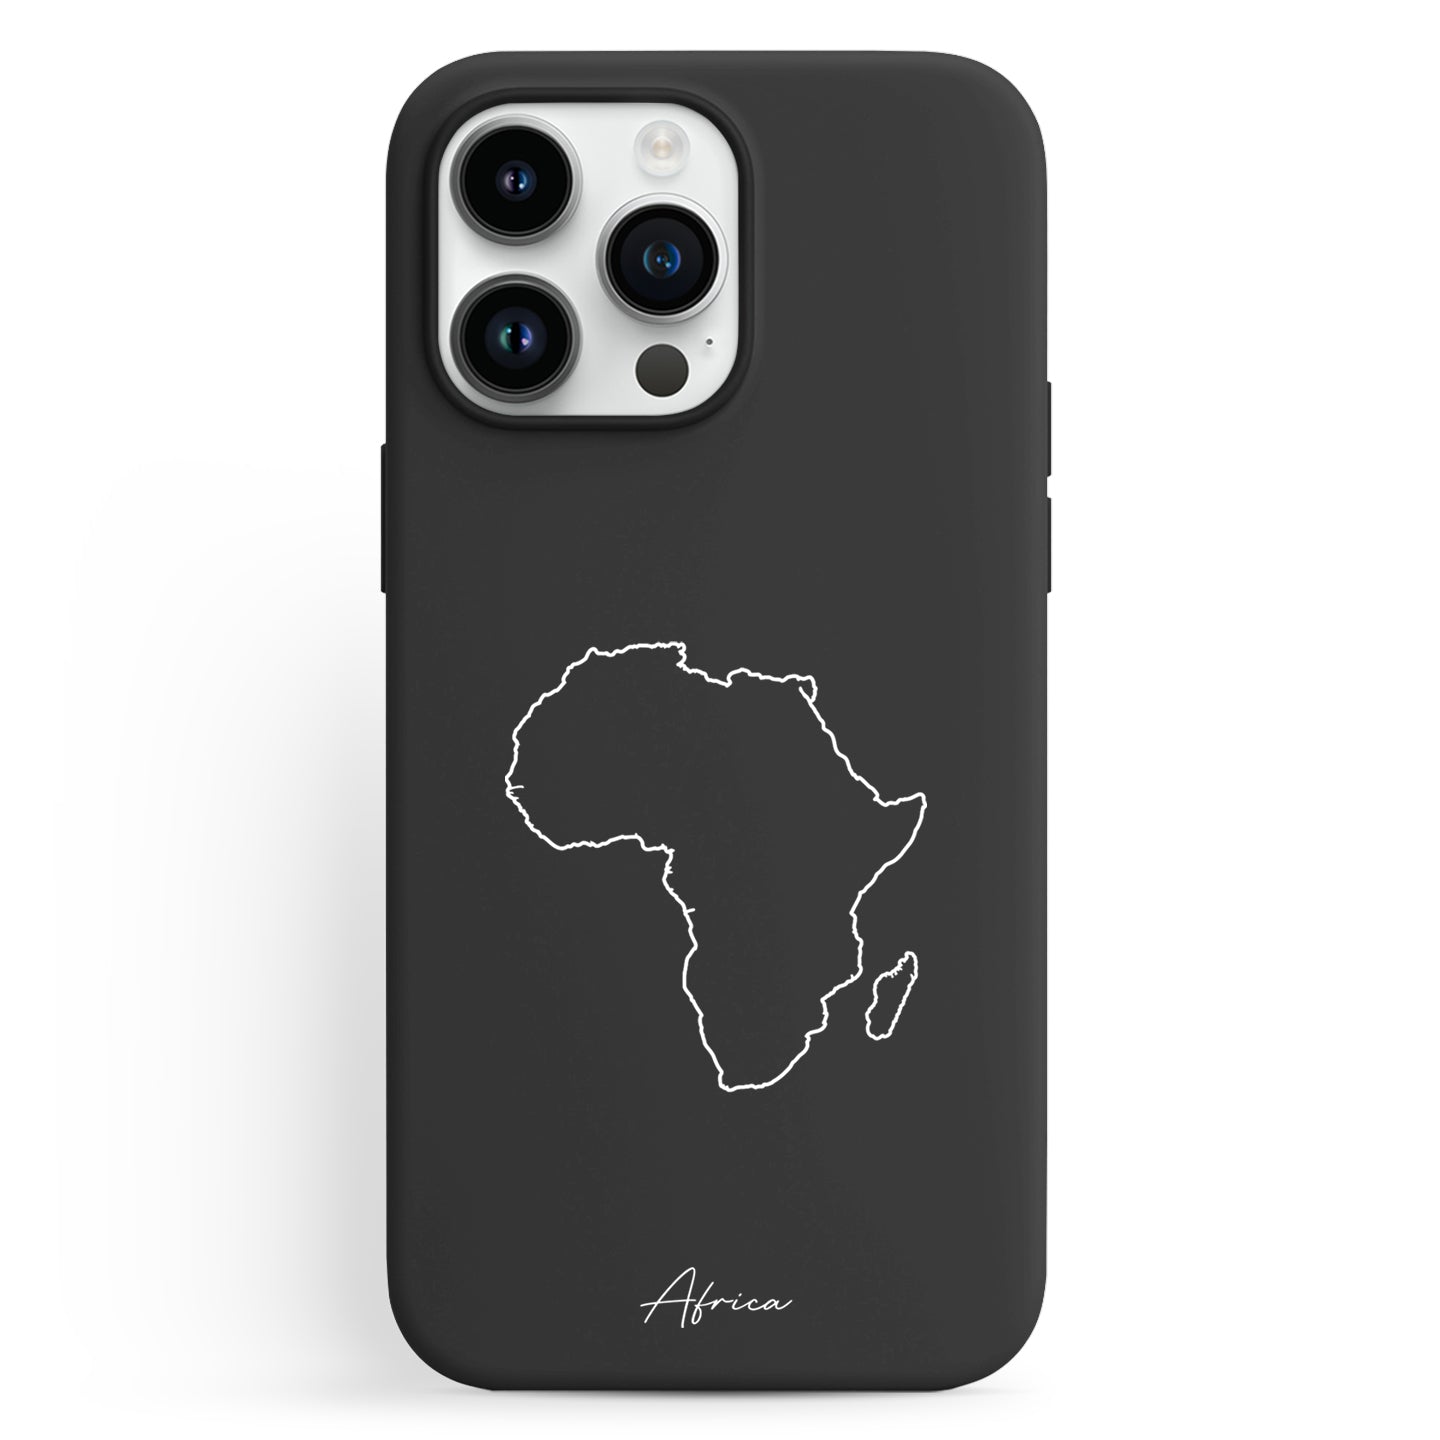 Handyhüllen mit Landkarte - Afrika - 1instaphone